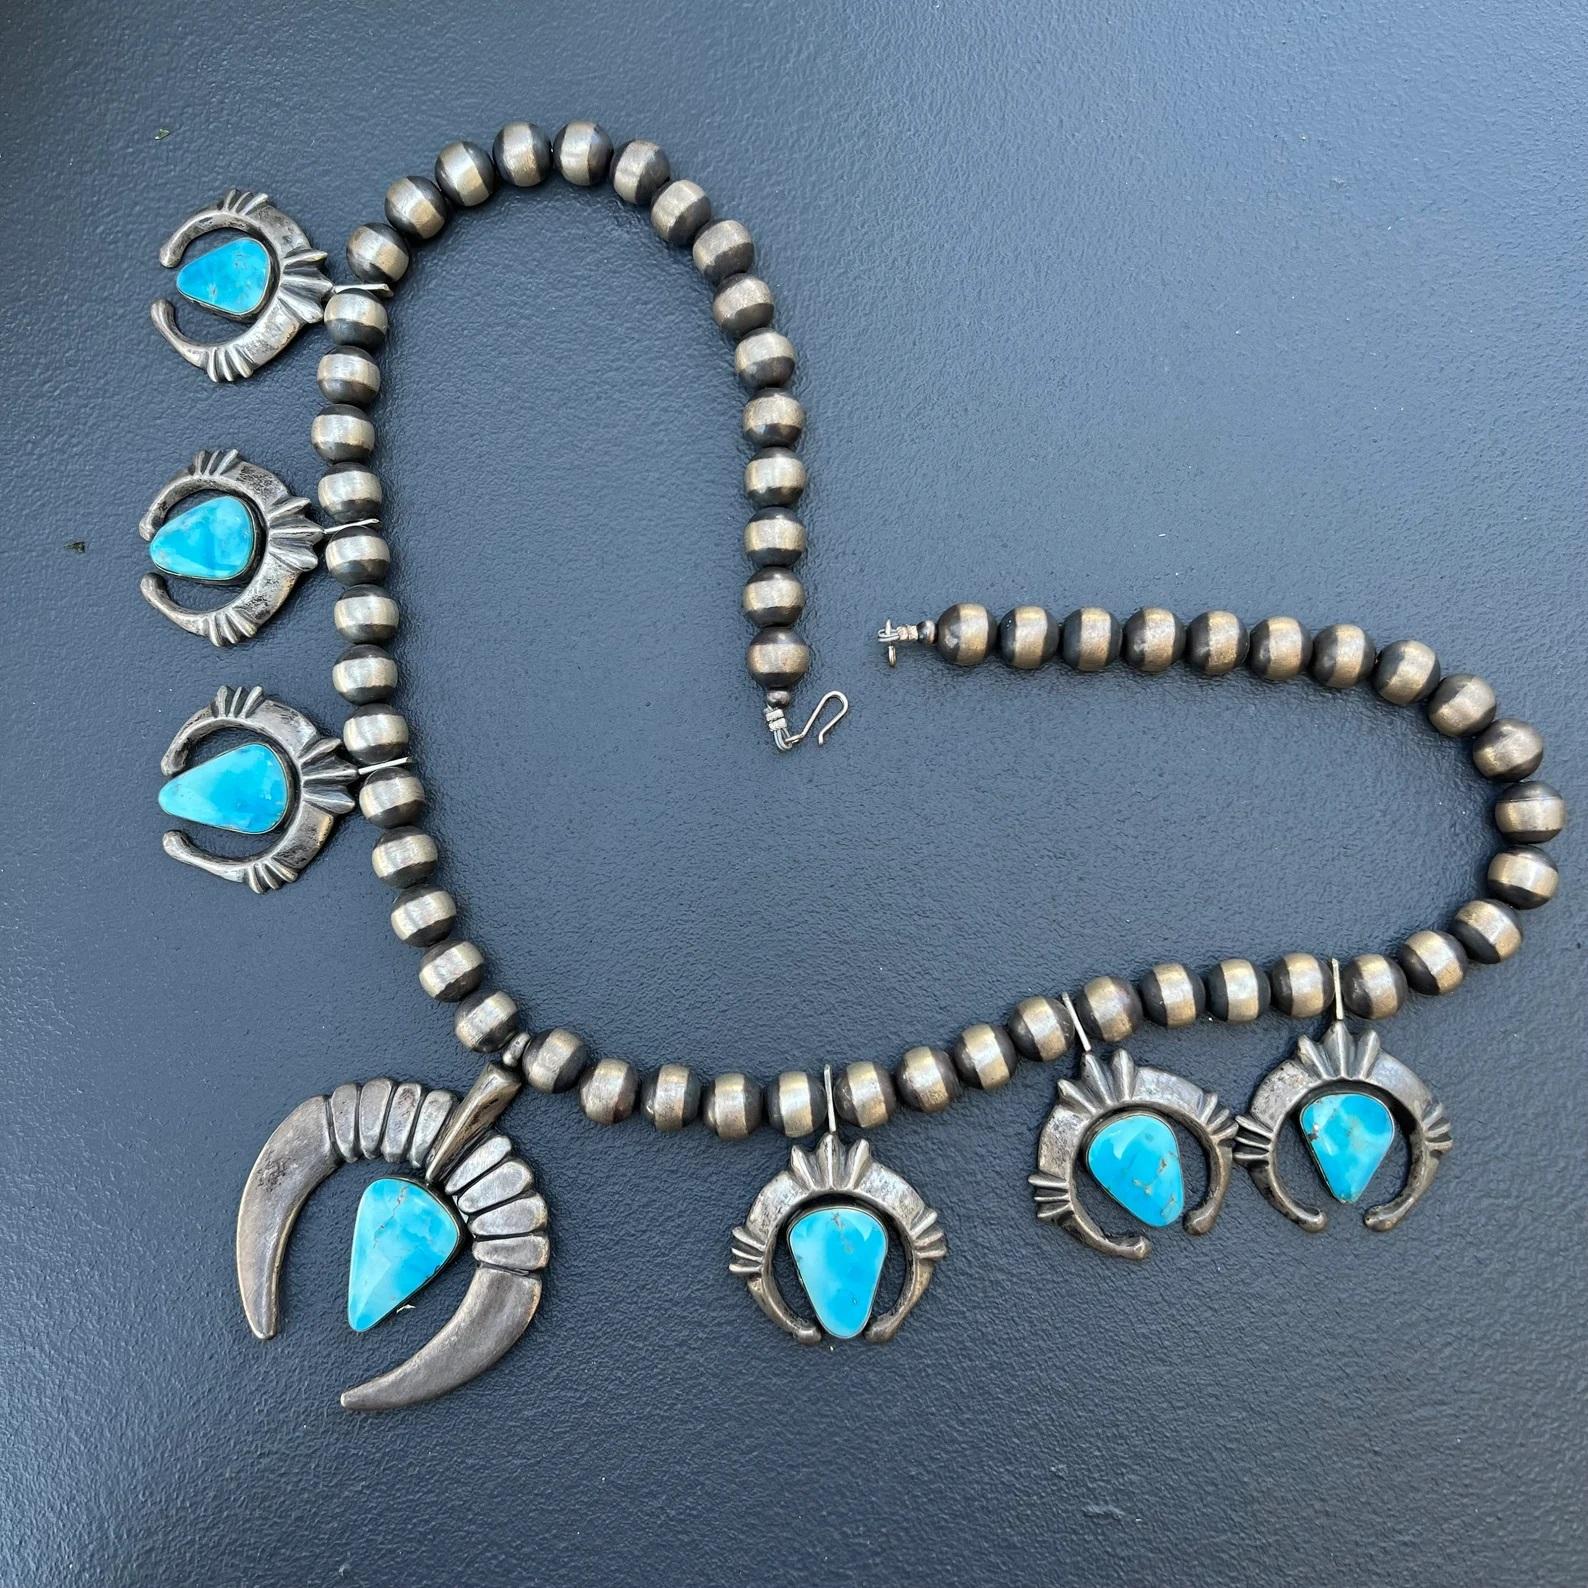 MASSIVE / Heavy Vintage Handcrafted by Navajo silversmith, Charles Johnson  Collier en argent oxydé avec un rang de perles Navajo, avec un grand naja au centre et des naja plus petits suspendus (3 de chaque côté) . Toutes les najas sont en argent